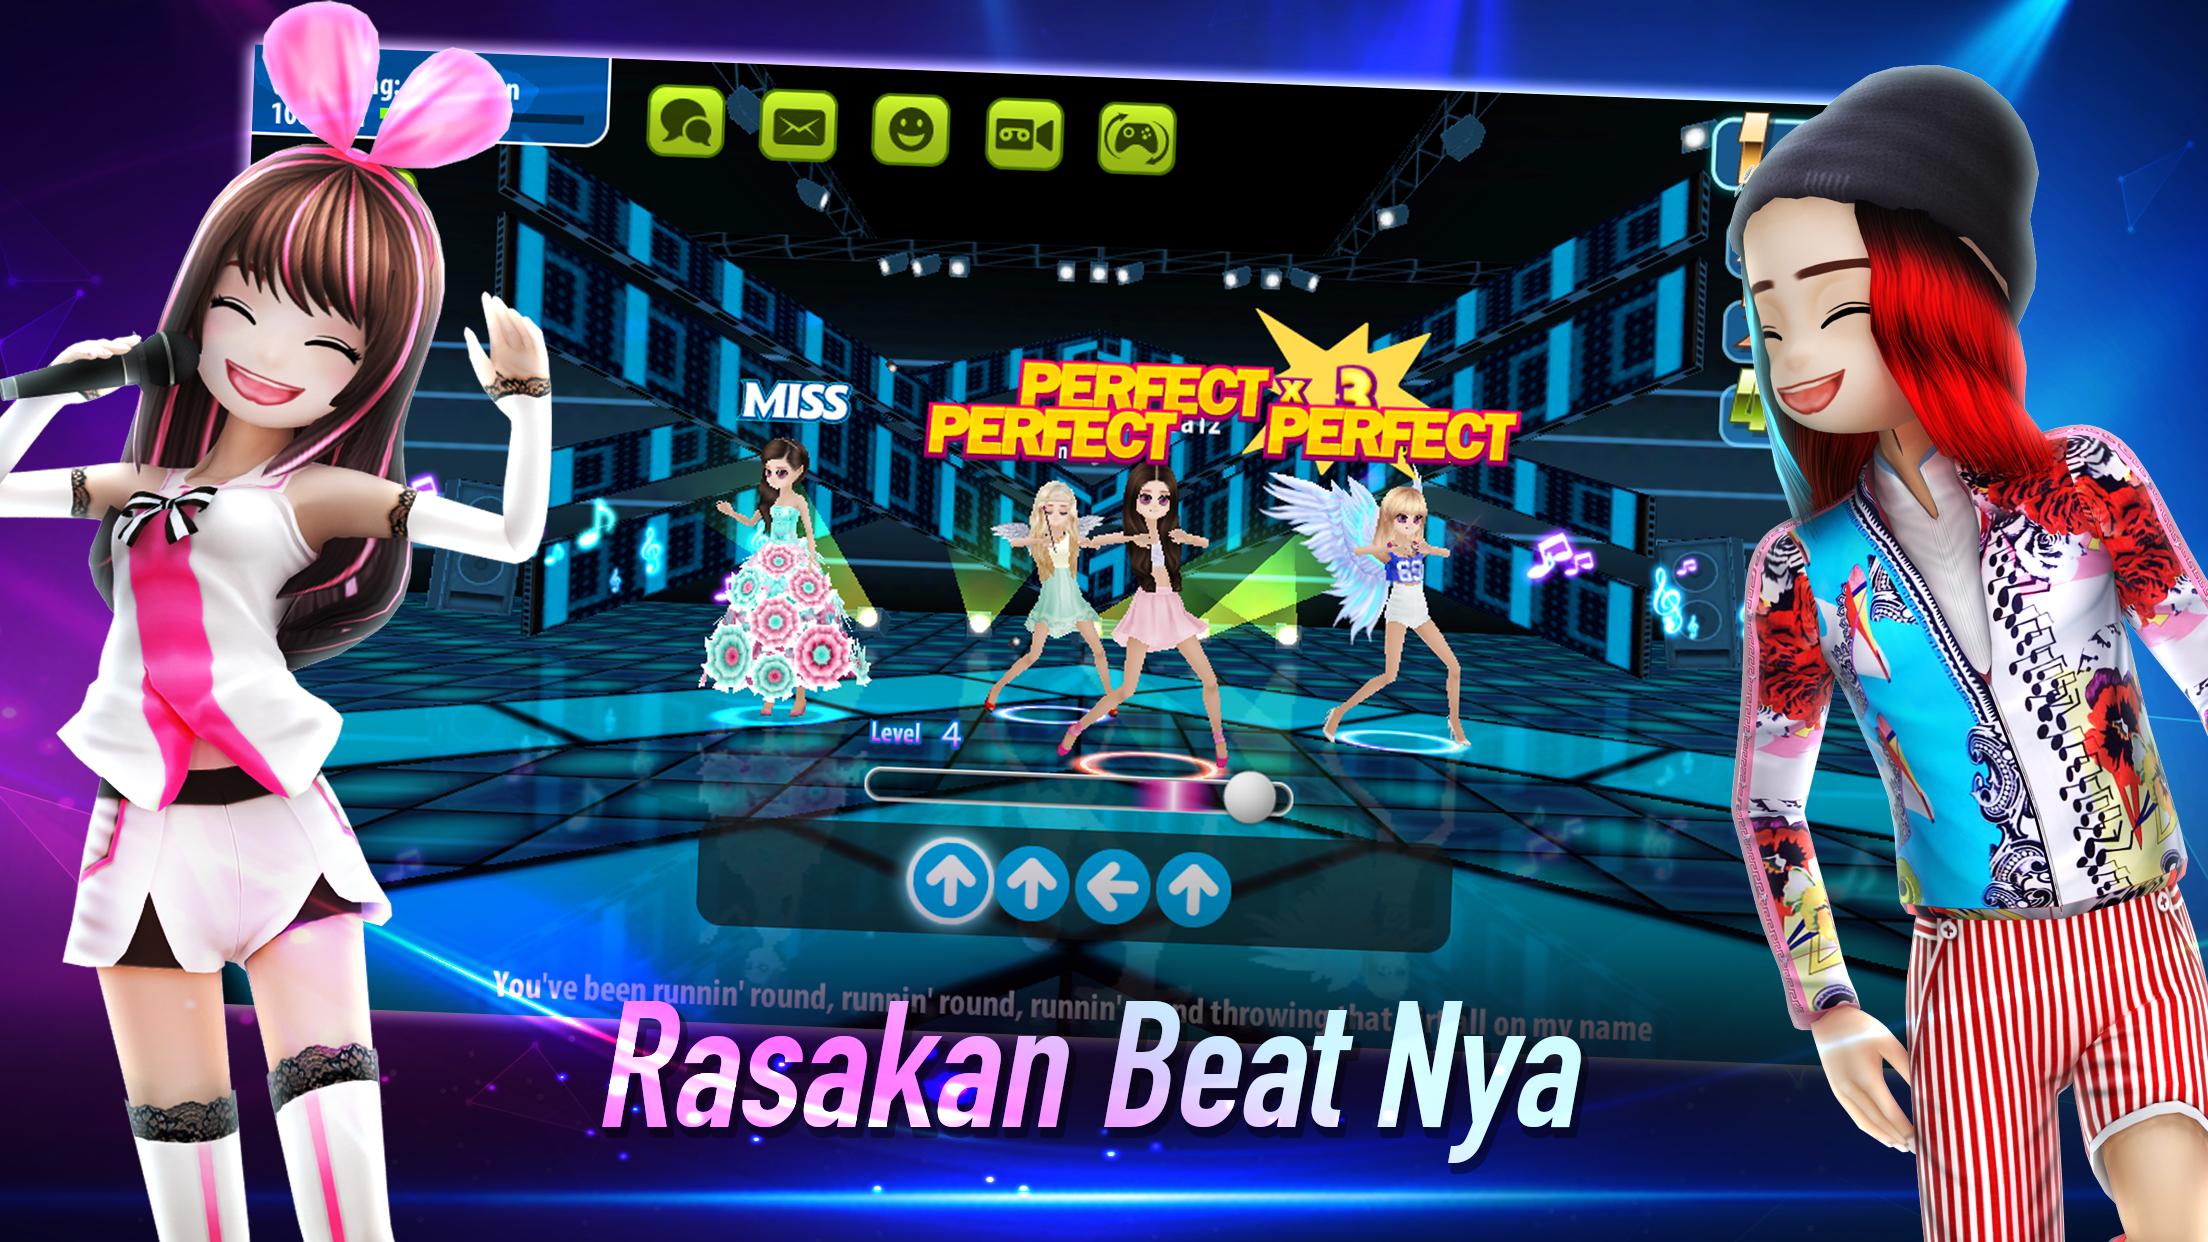 AVATAR MUSIK INDONESIA - Social Dancing Game 1.0.1 Screenshot 2